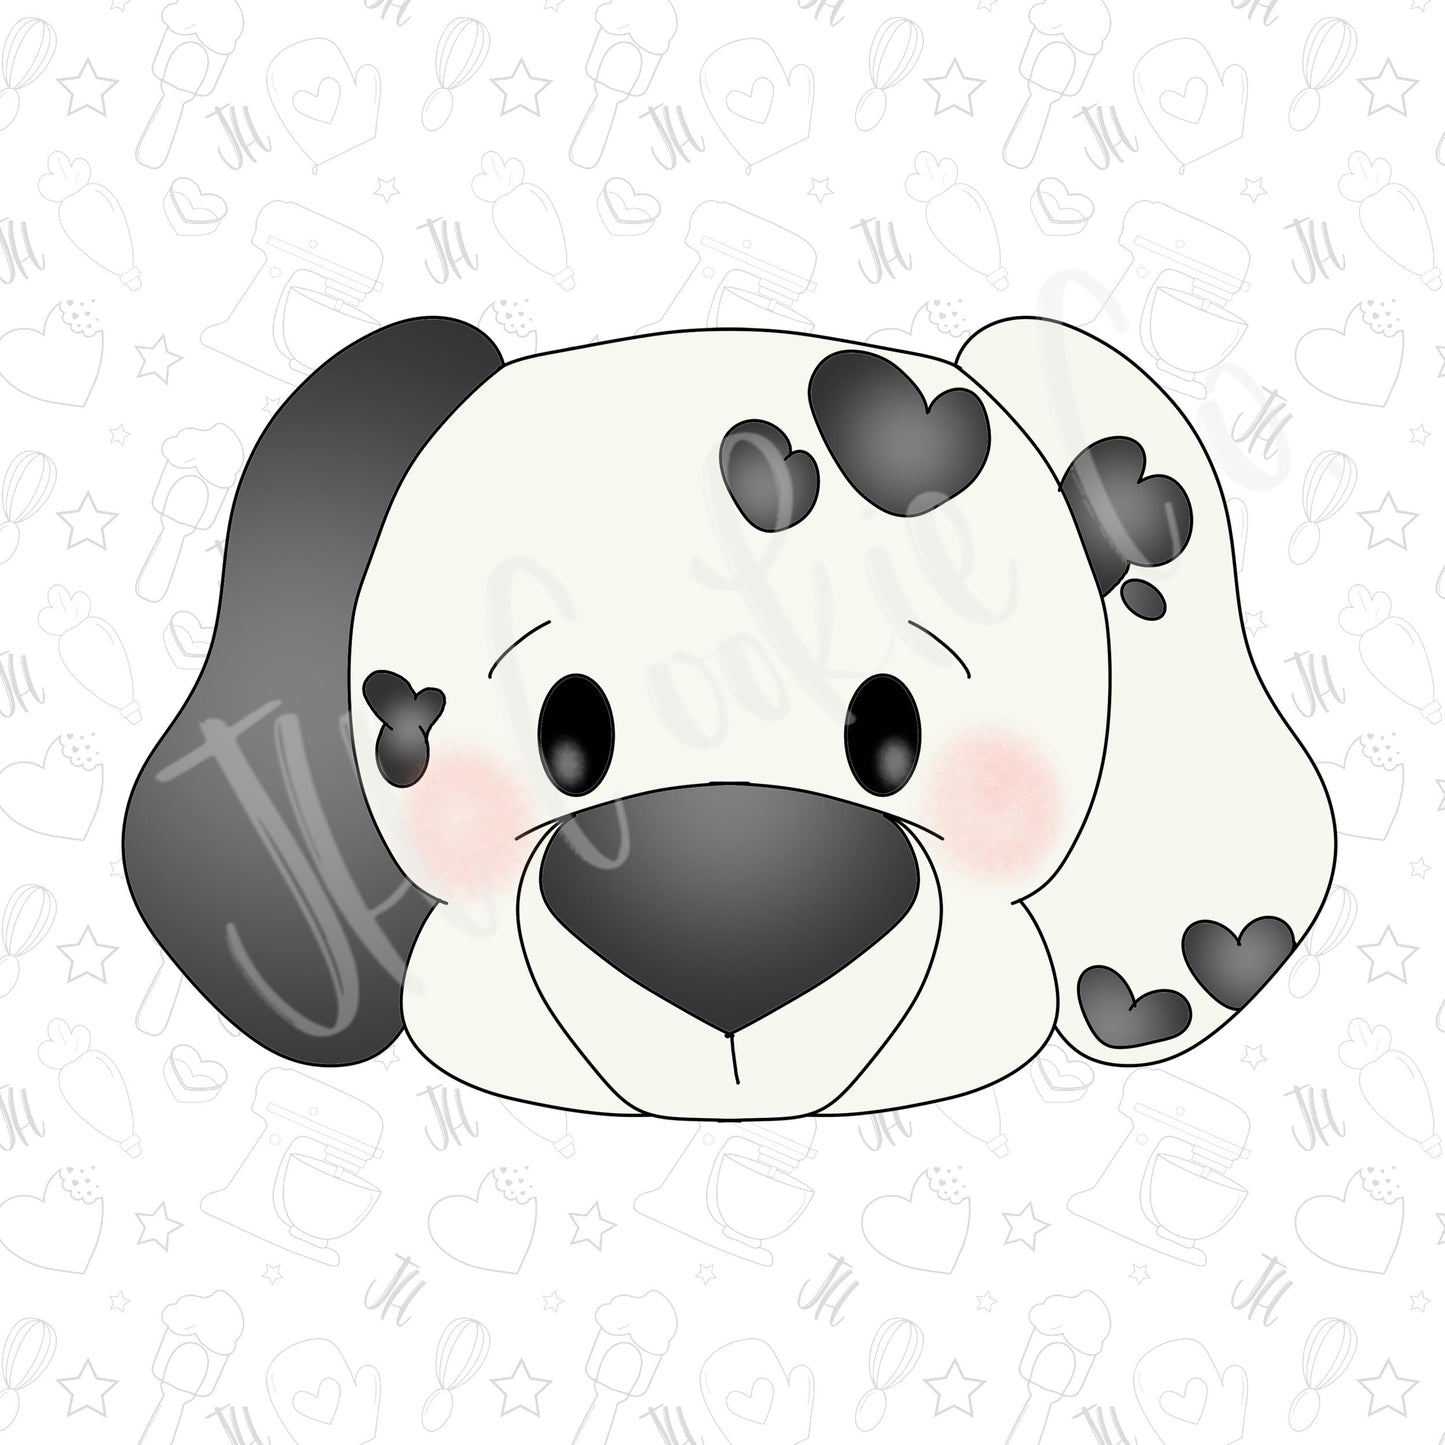 Dalmatian dog cookie cutter